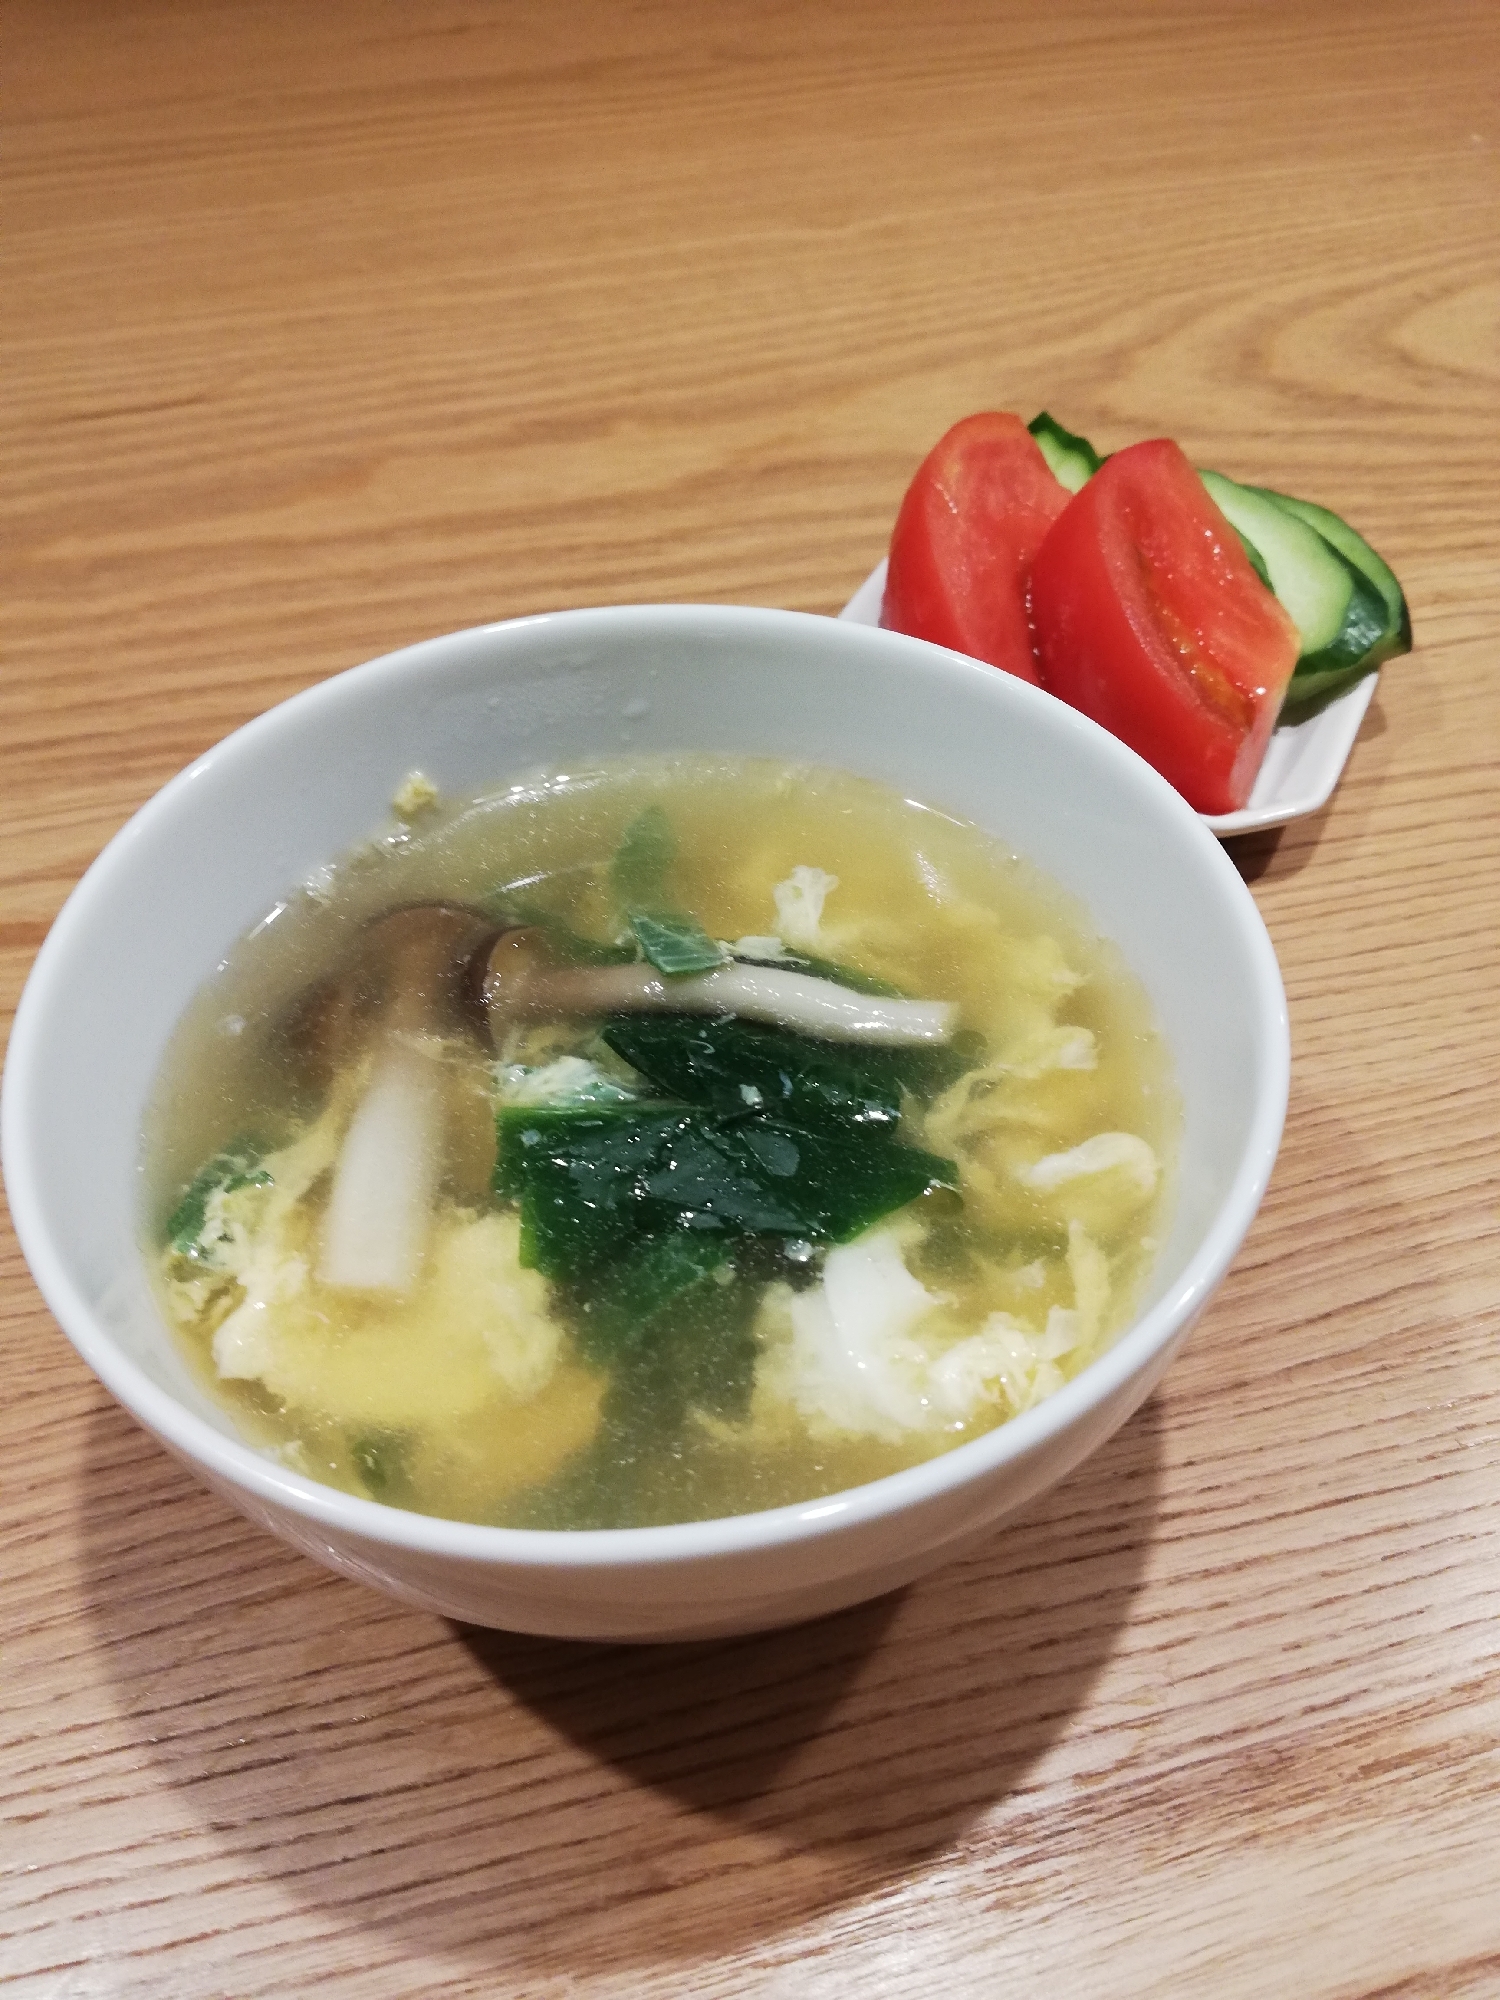 お腹に優しい・和風野菜たまごスープ・雑炊にも